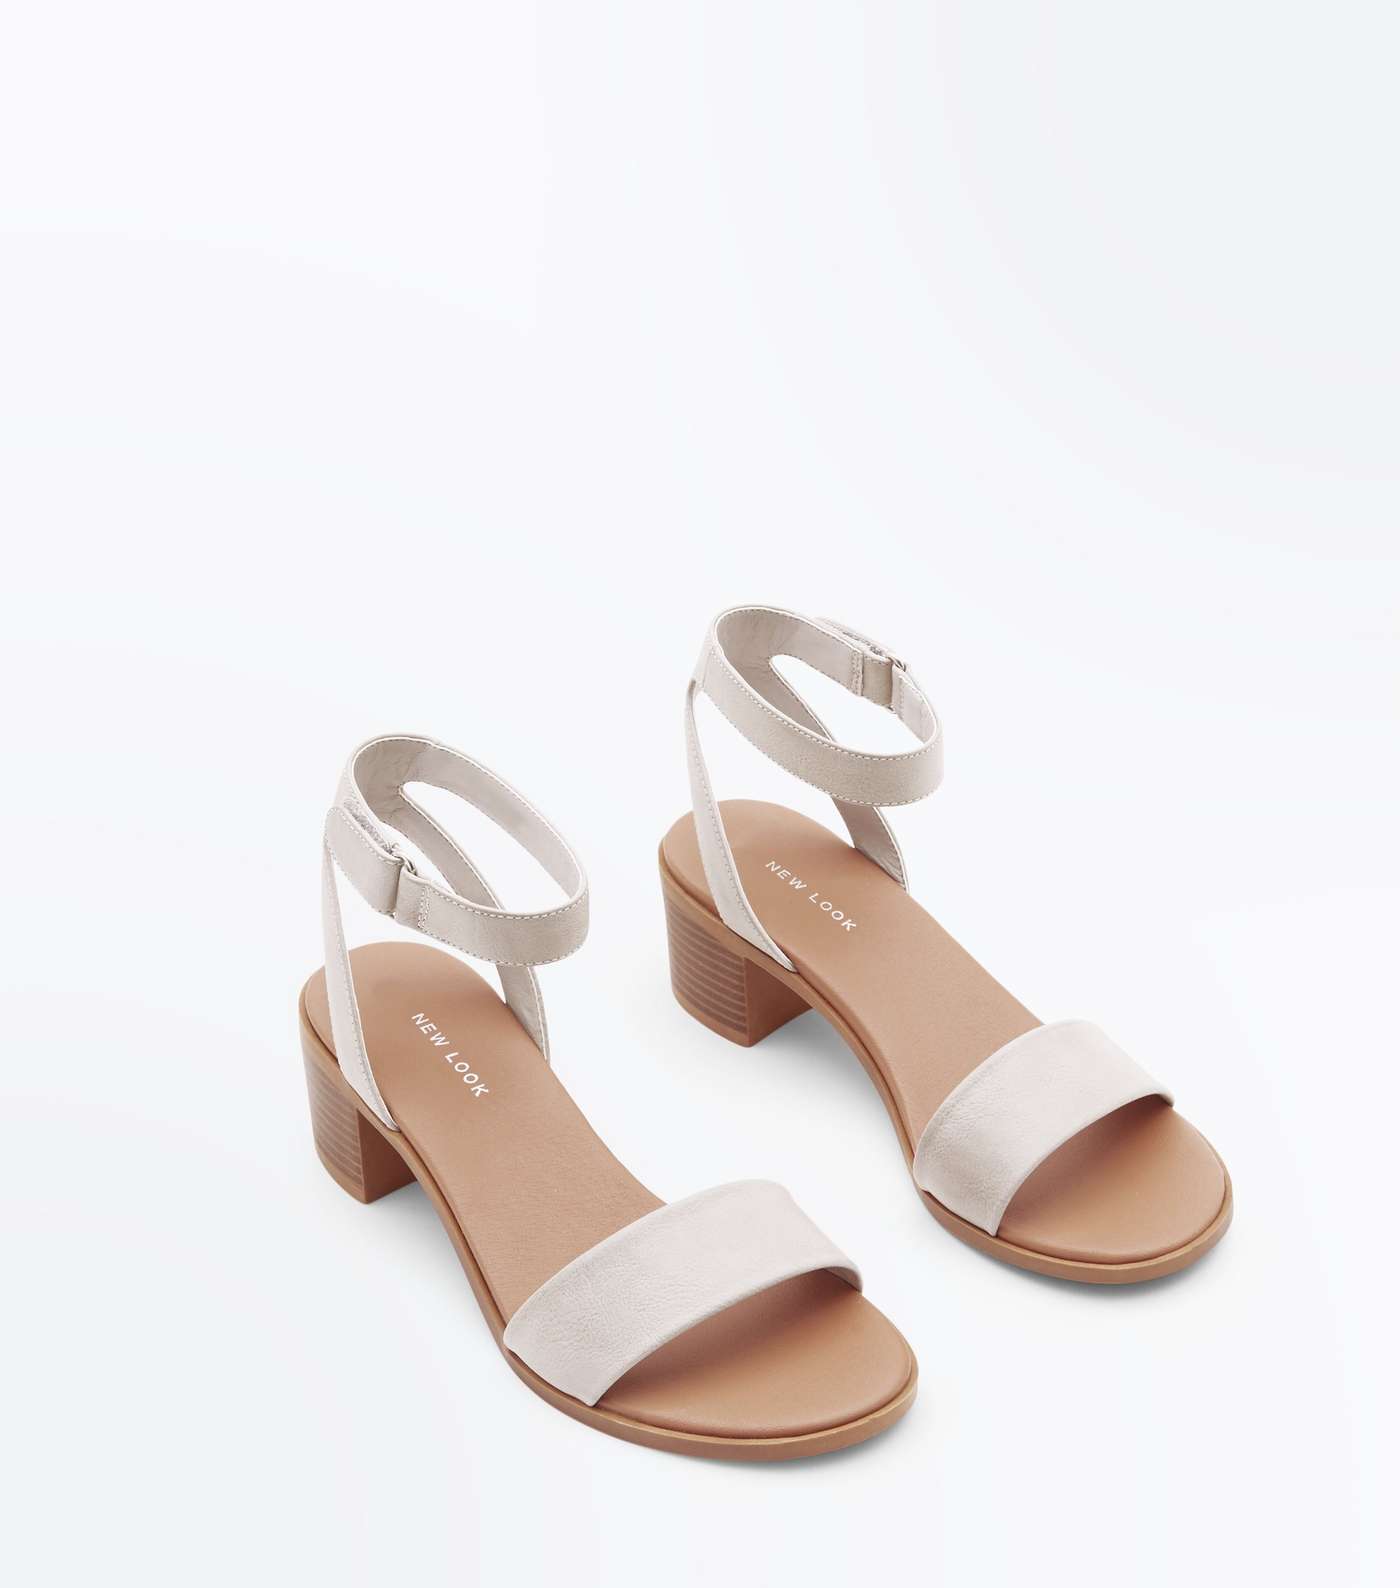 Grey Low Block Heel Flexible Sole Sandals Image 4